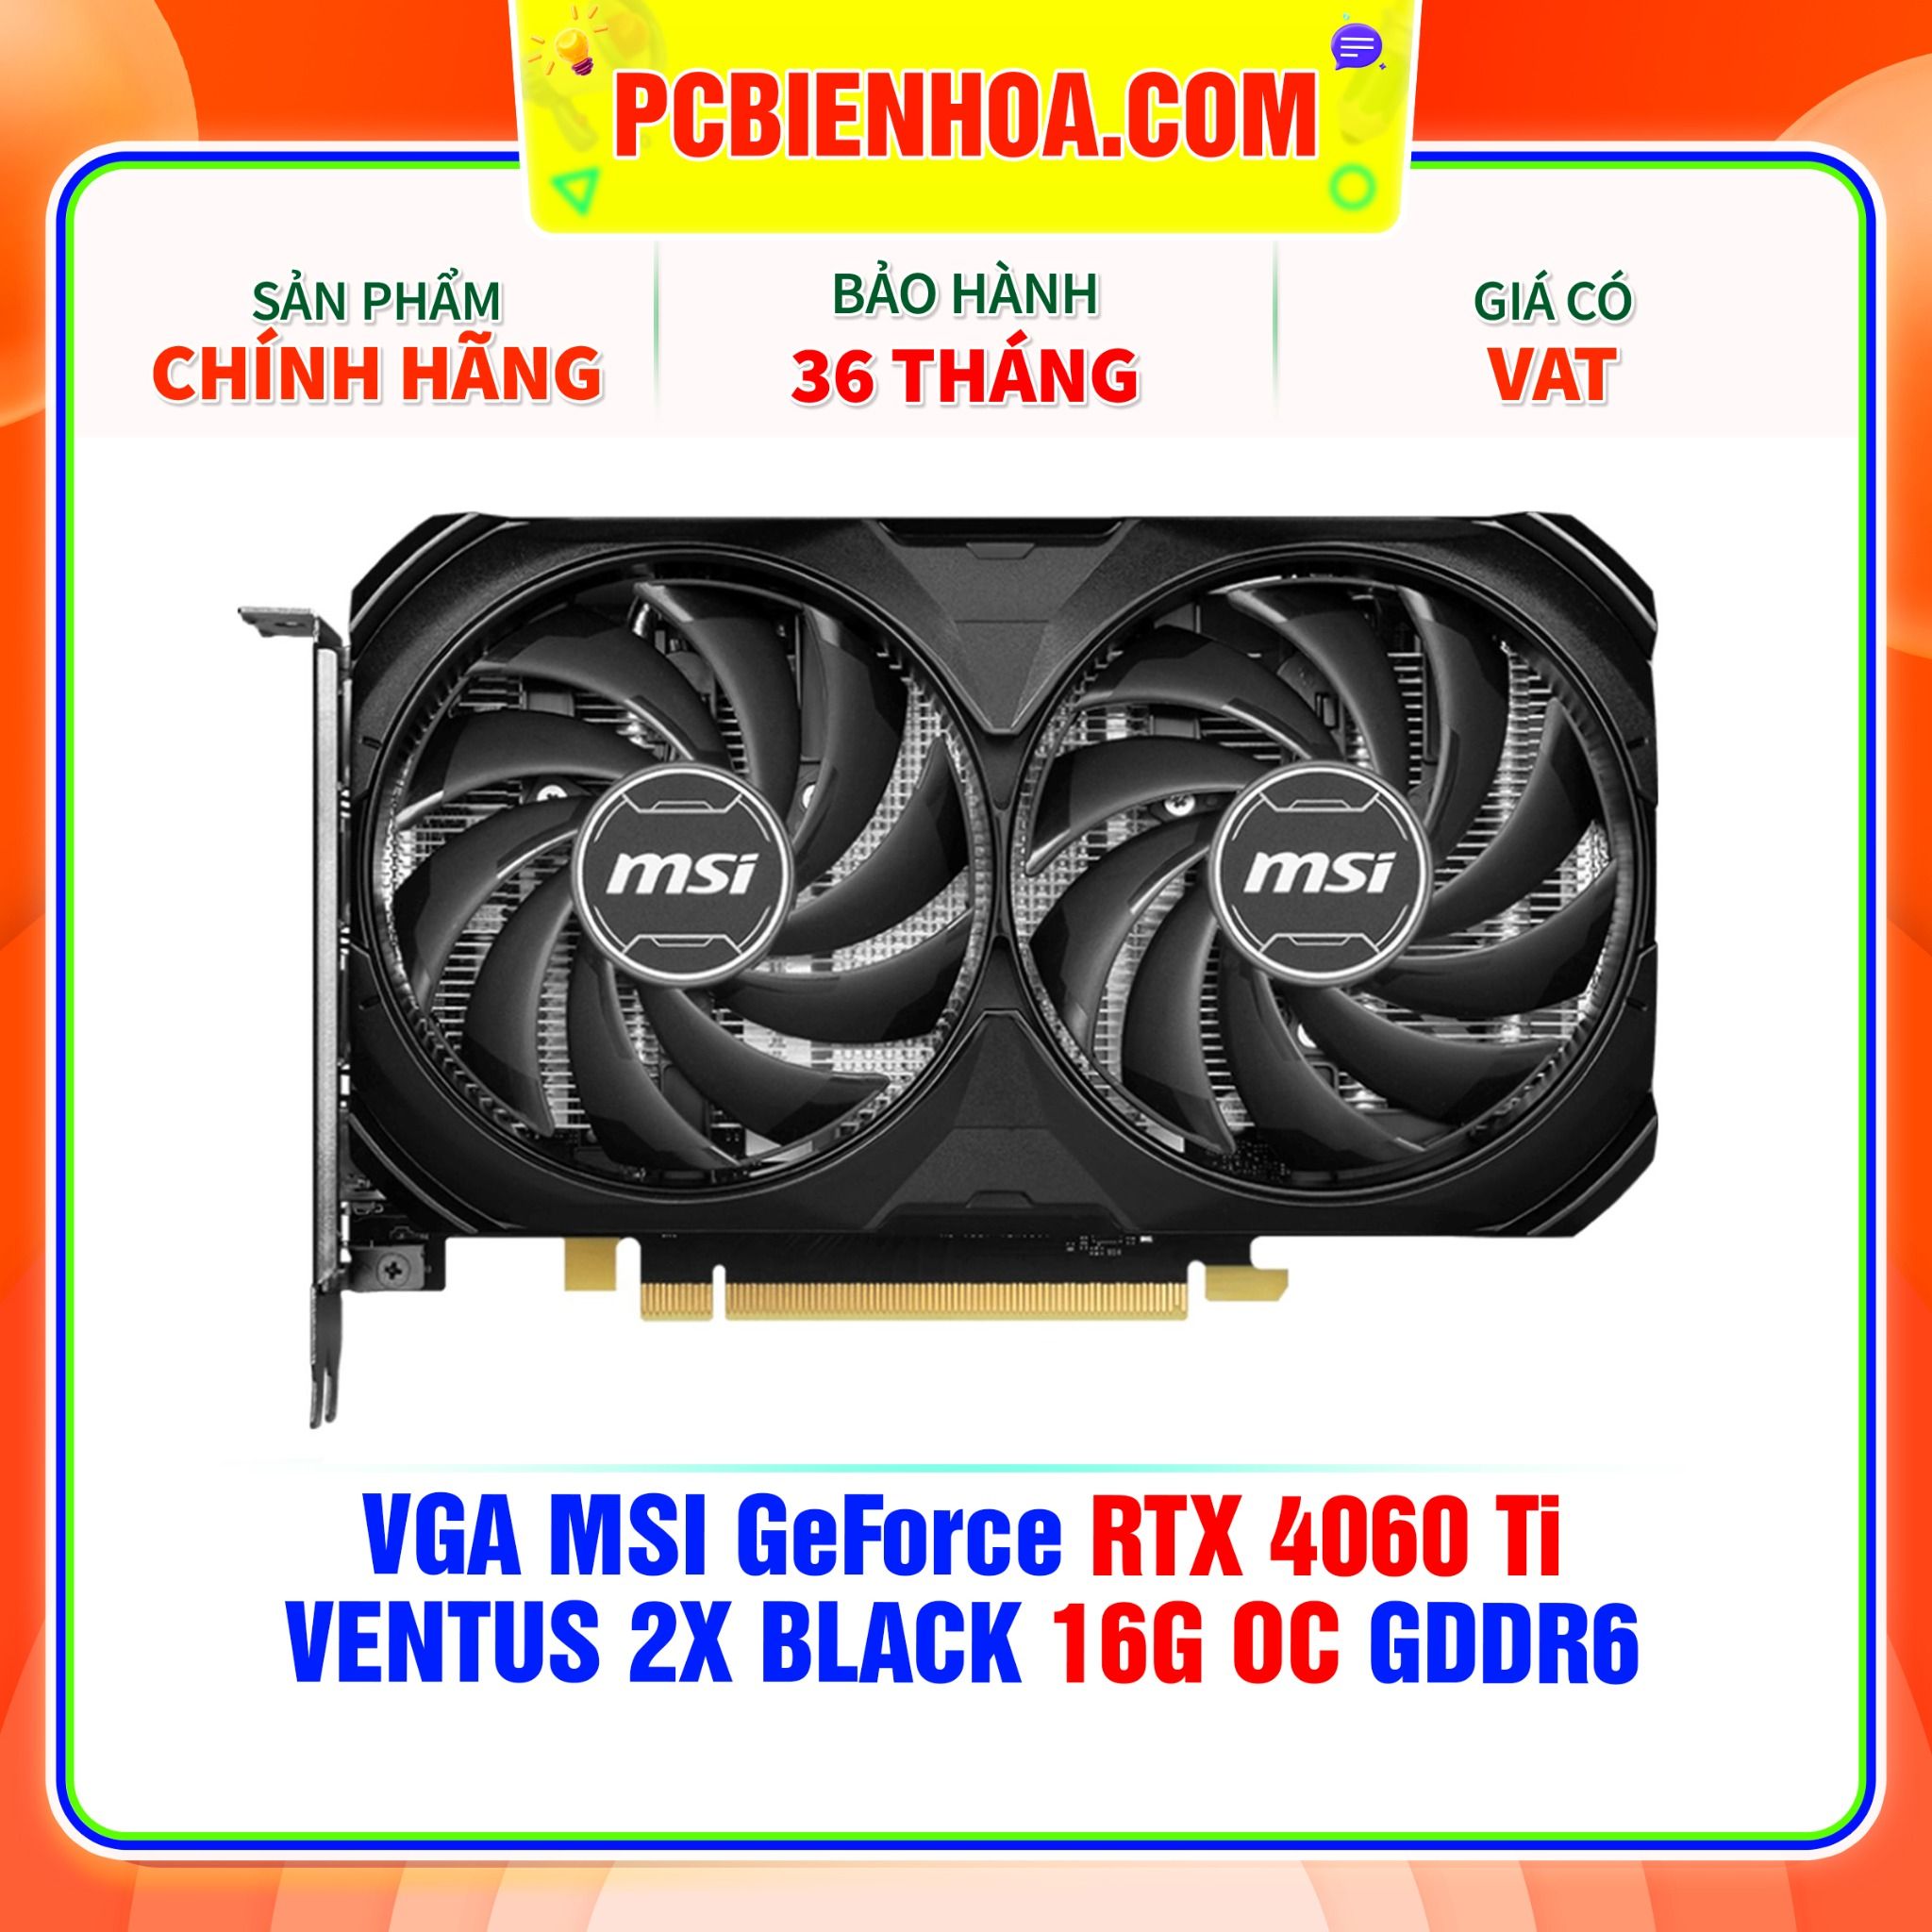  VGA MSI GeForce RTX 4060 Ti VENTUS 2X BLACK 16G OC GDDR6 